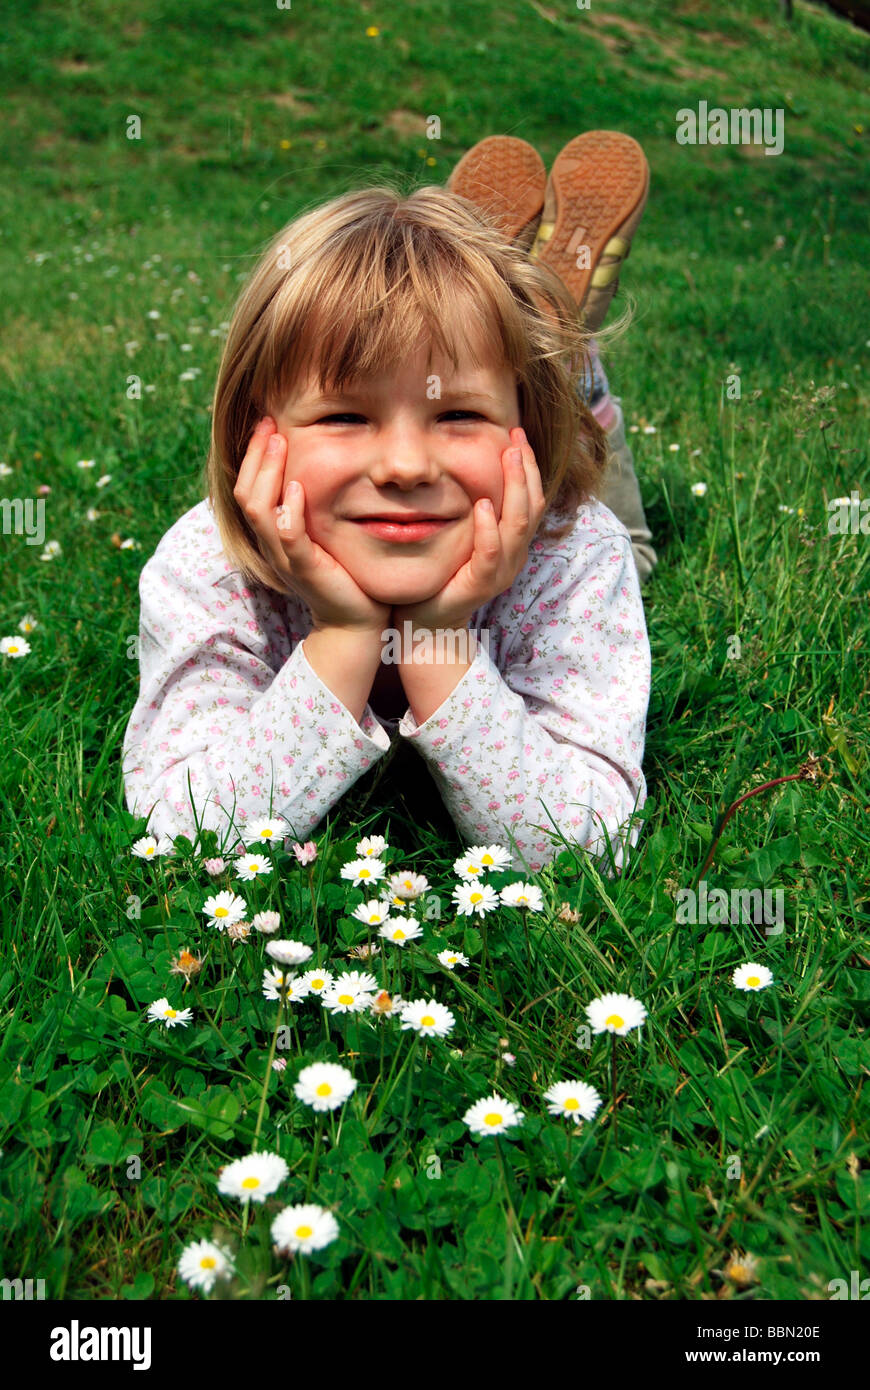 Fille, 5 ans, allongé sur une prairie avec pâquerettes (Bellis perennis) Banque D'Images